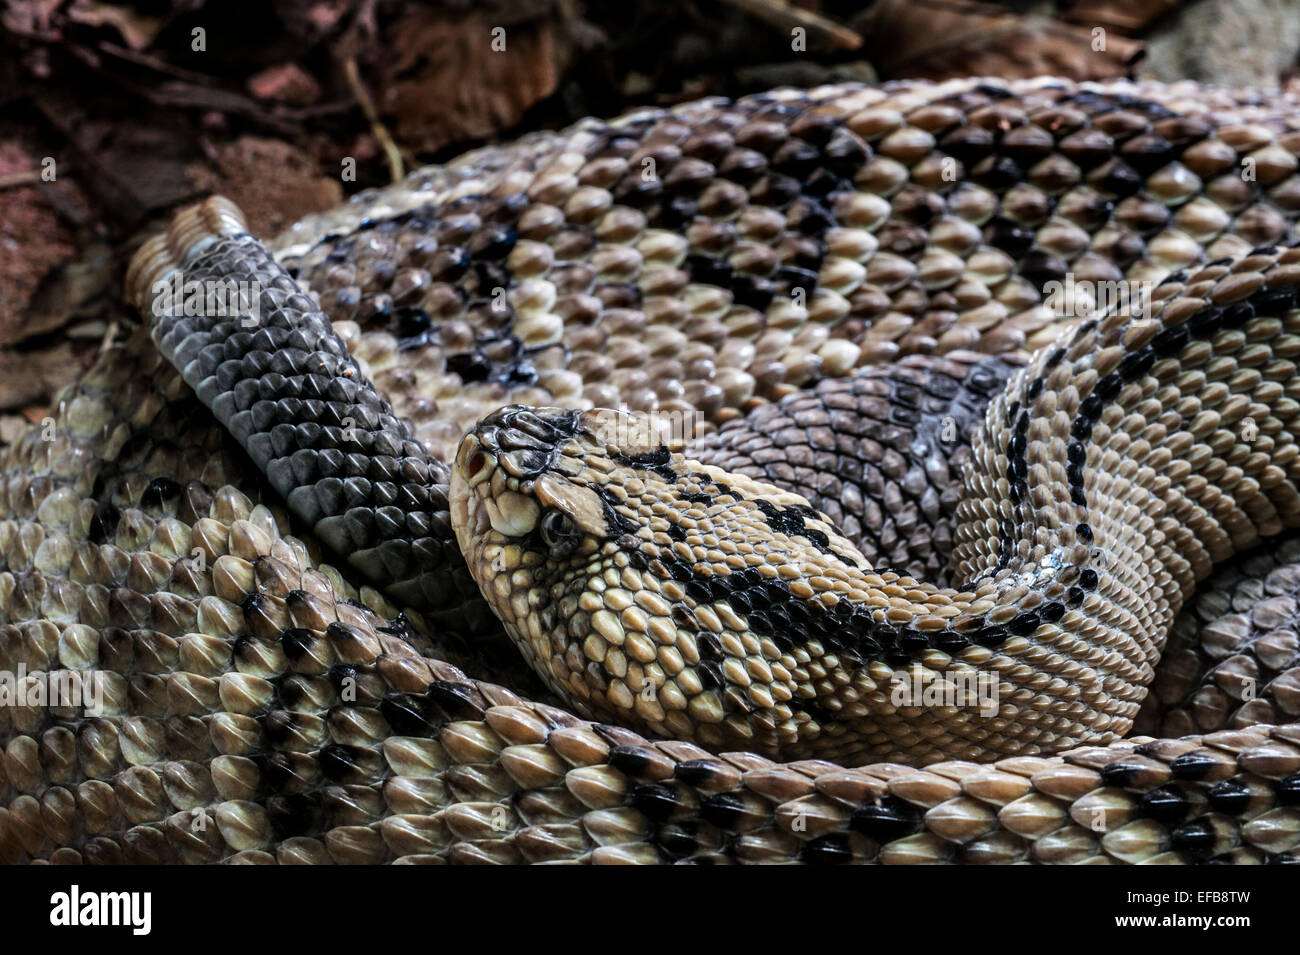 Noroeste Neotropical (serpientes de cascabel Crotalus culminatus / Crotalus simus culminatus) enrollados, venenosos pit viper, México Foto de stock